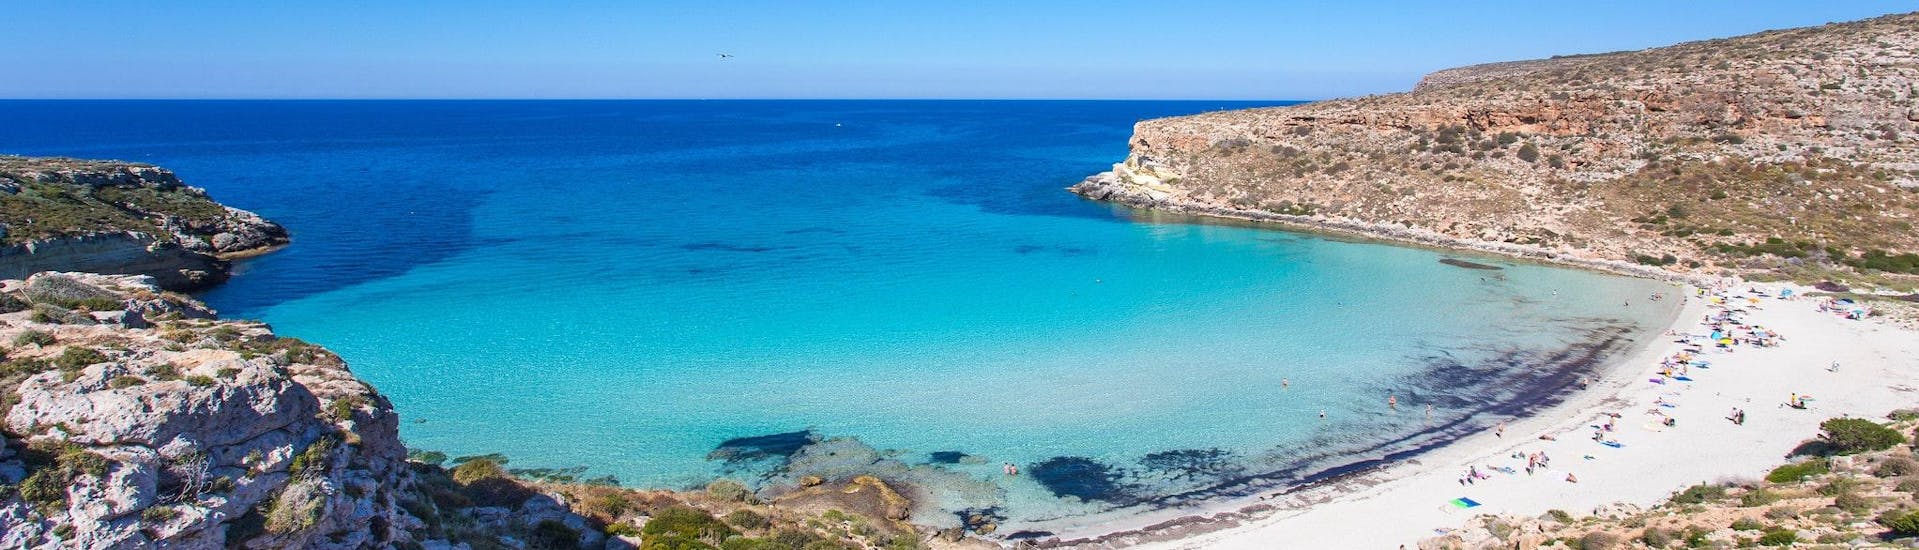 Blick auf den paradiesischen Strand Spiaggia dei Conigli, der bei vielen Bootstouren in Lampedusa besucht werden kann.